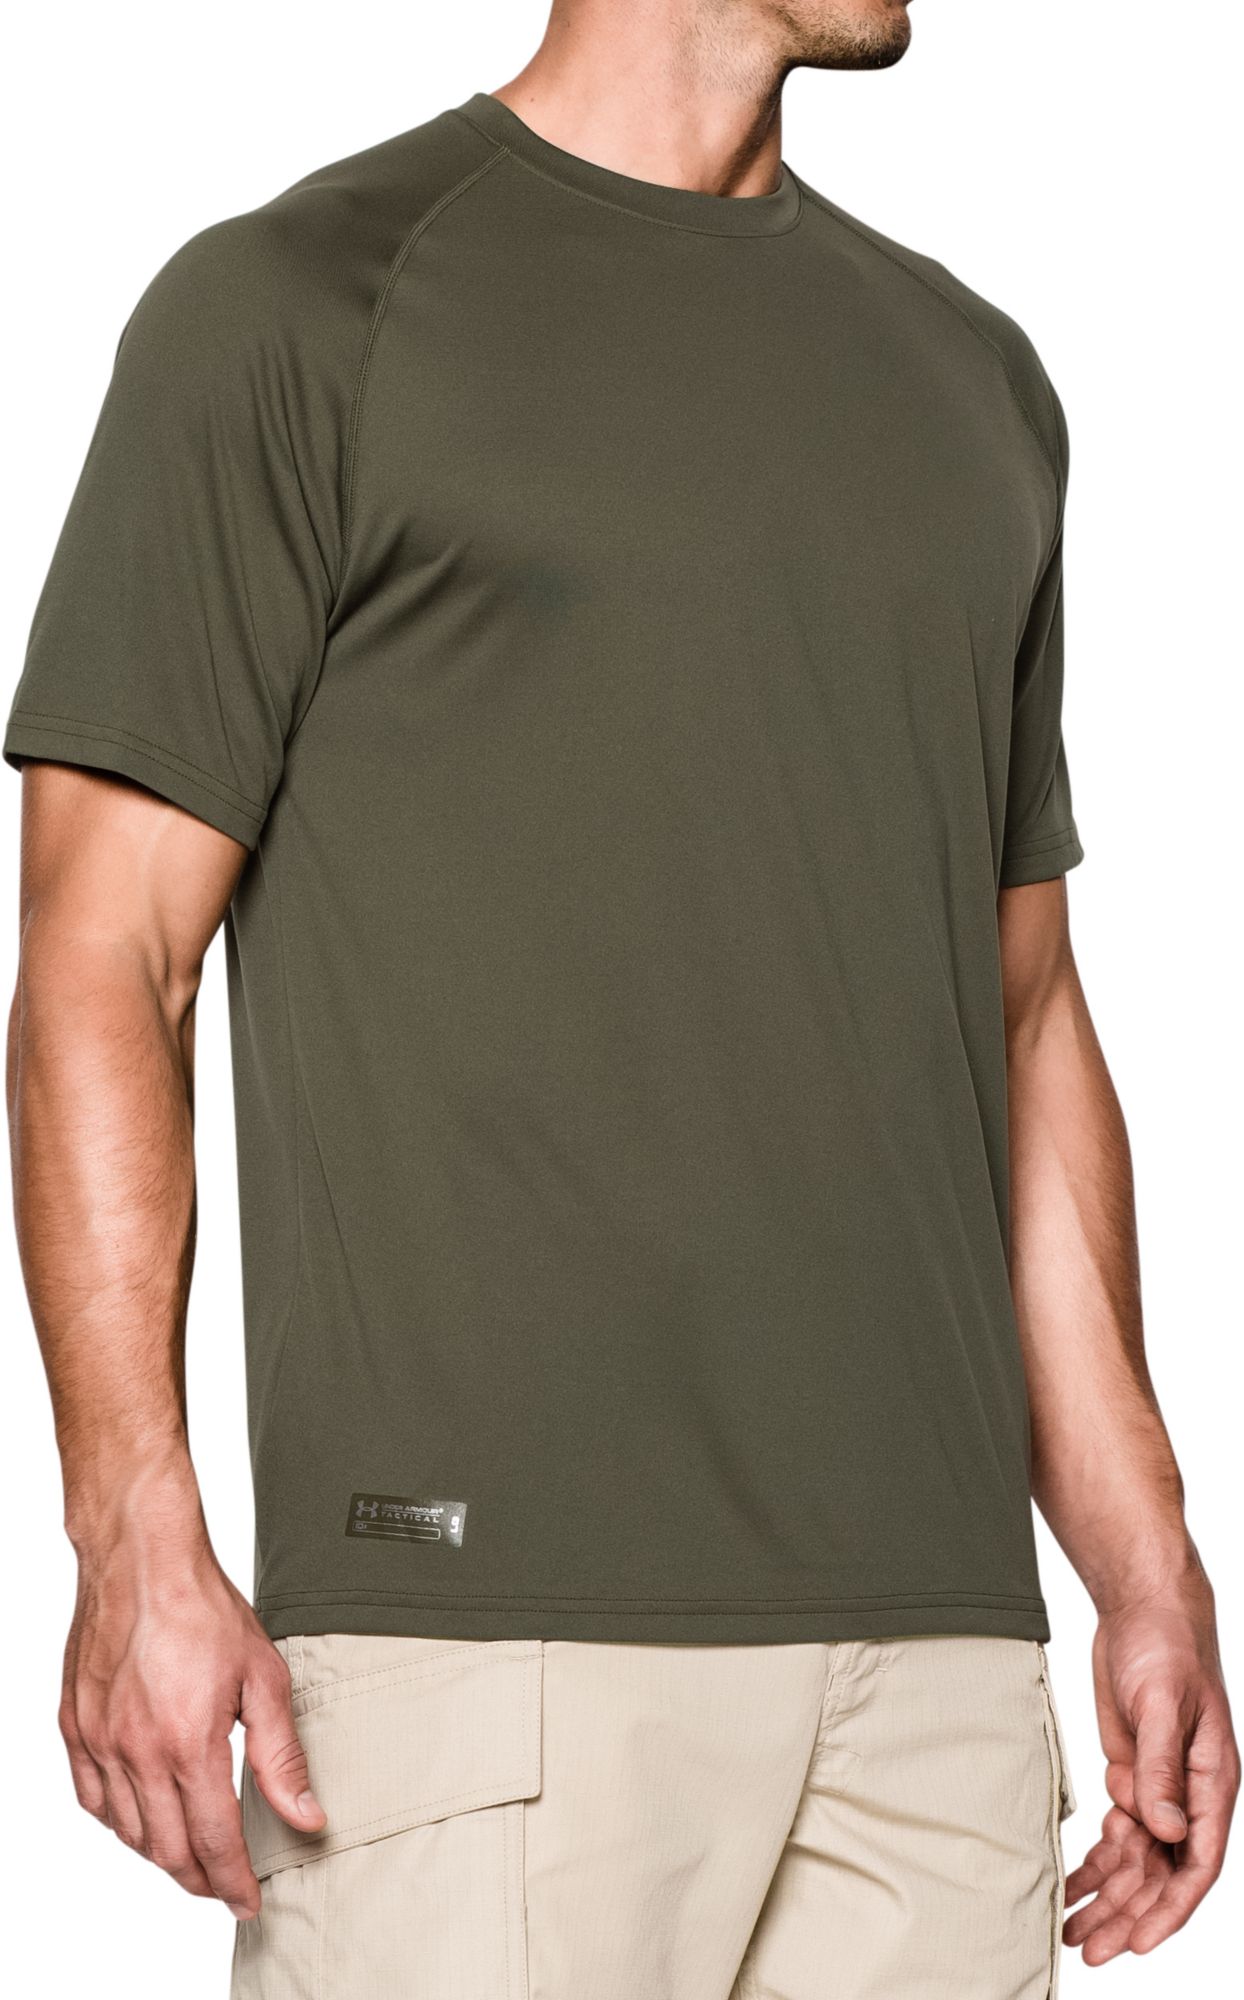 1005684 Men's Brown Tactical Tech Short Sleeve Shirt - Size Small 